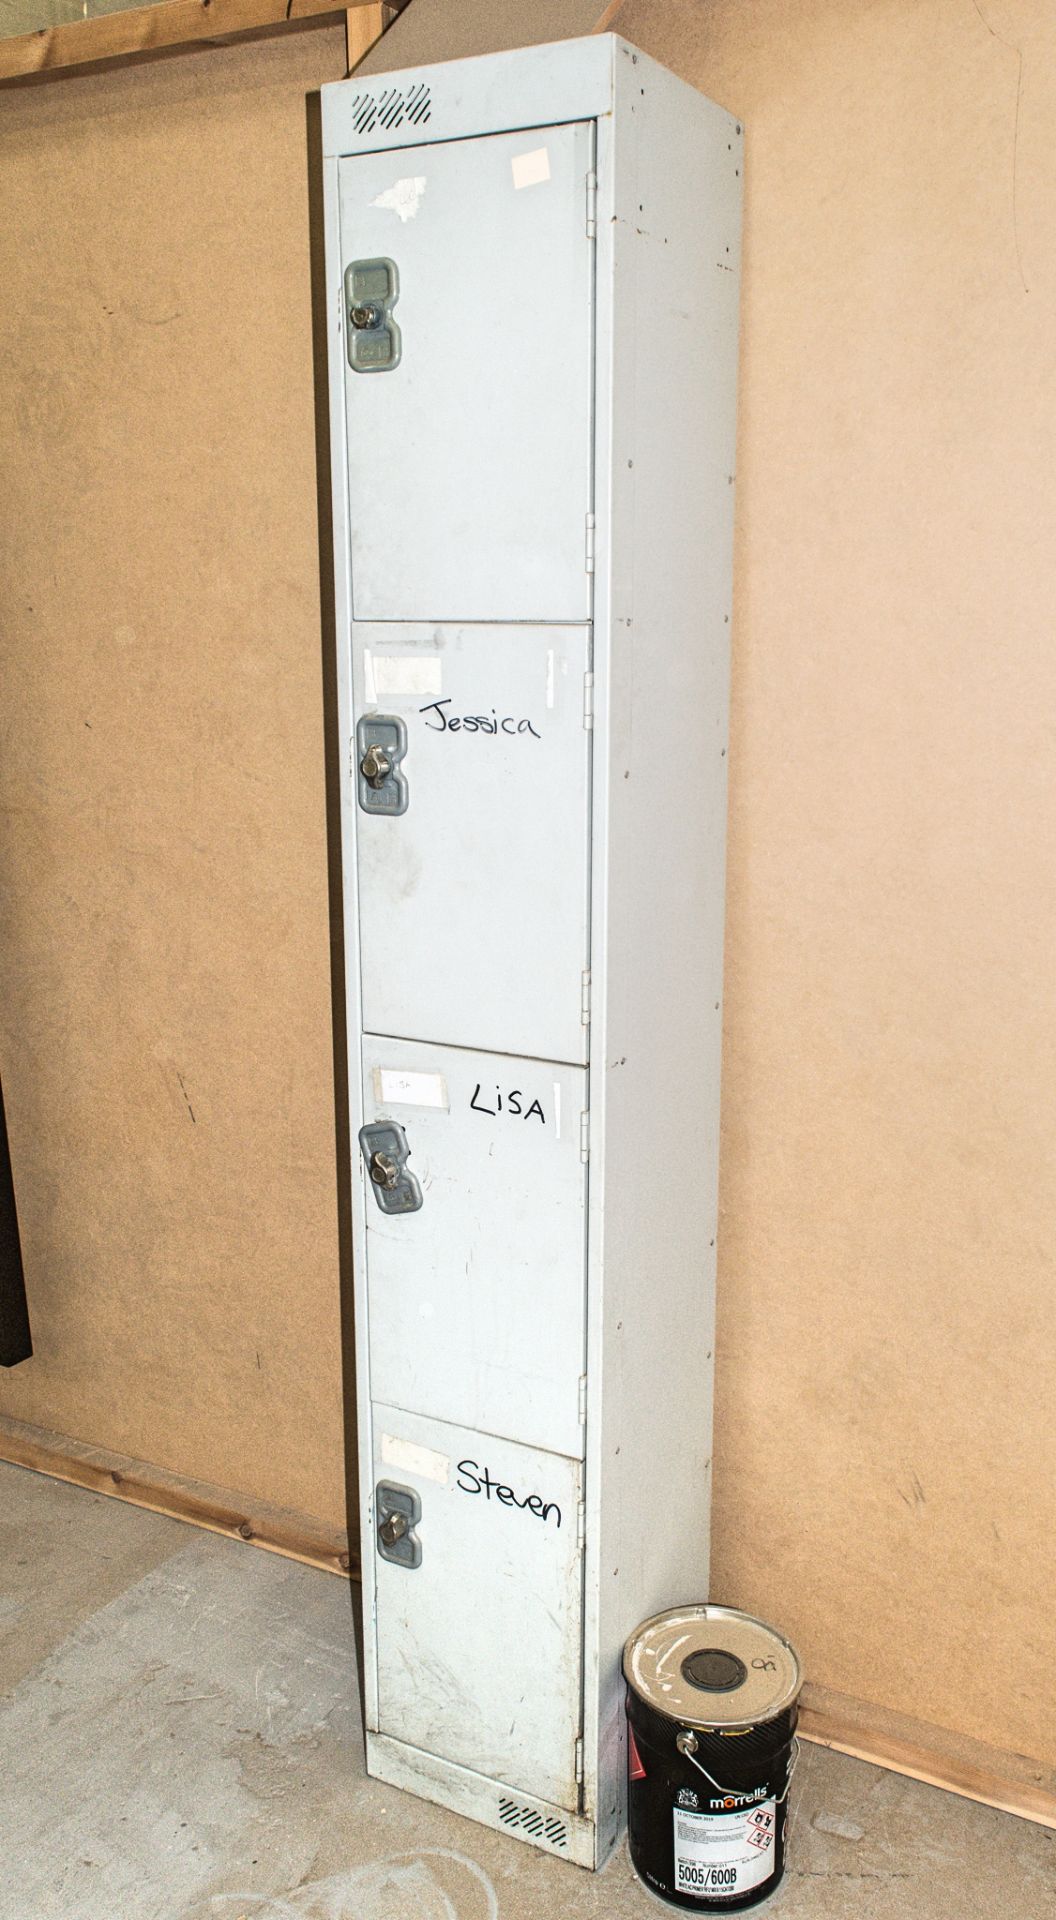 4 door steel locker Dimensions: 180 cm x 30 cm x 30 cm